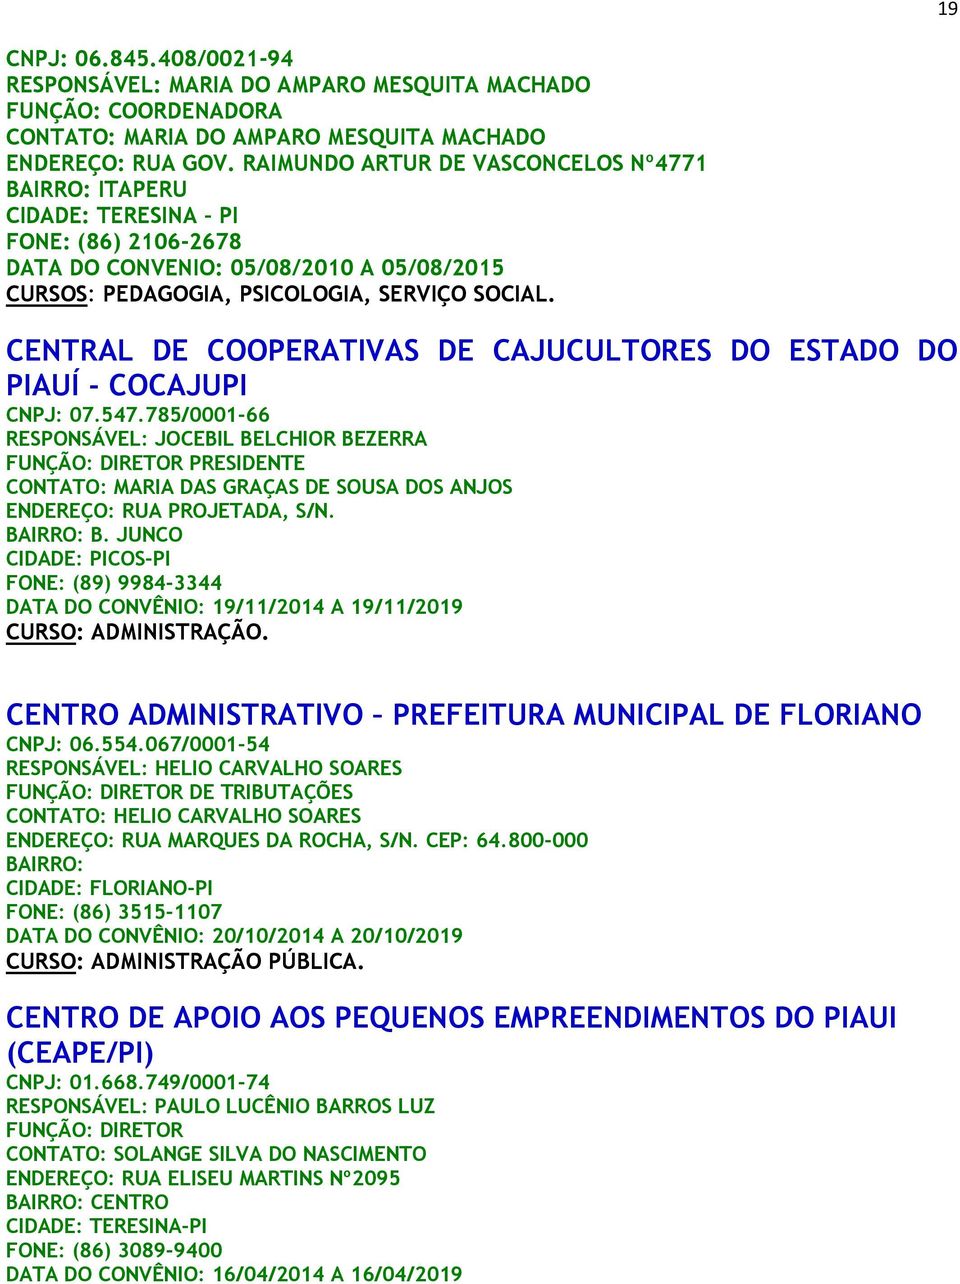 CENTRAL DE COOPERATIVAS DE CAJUCULTORES DO ESTADO DO PIAUÍ - COCAJUPI CNPJ: 07.547.